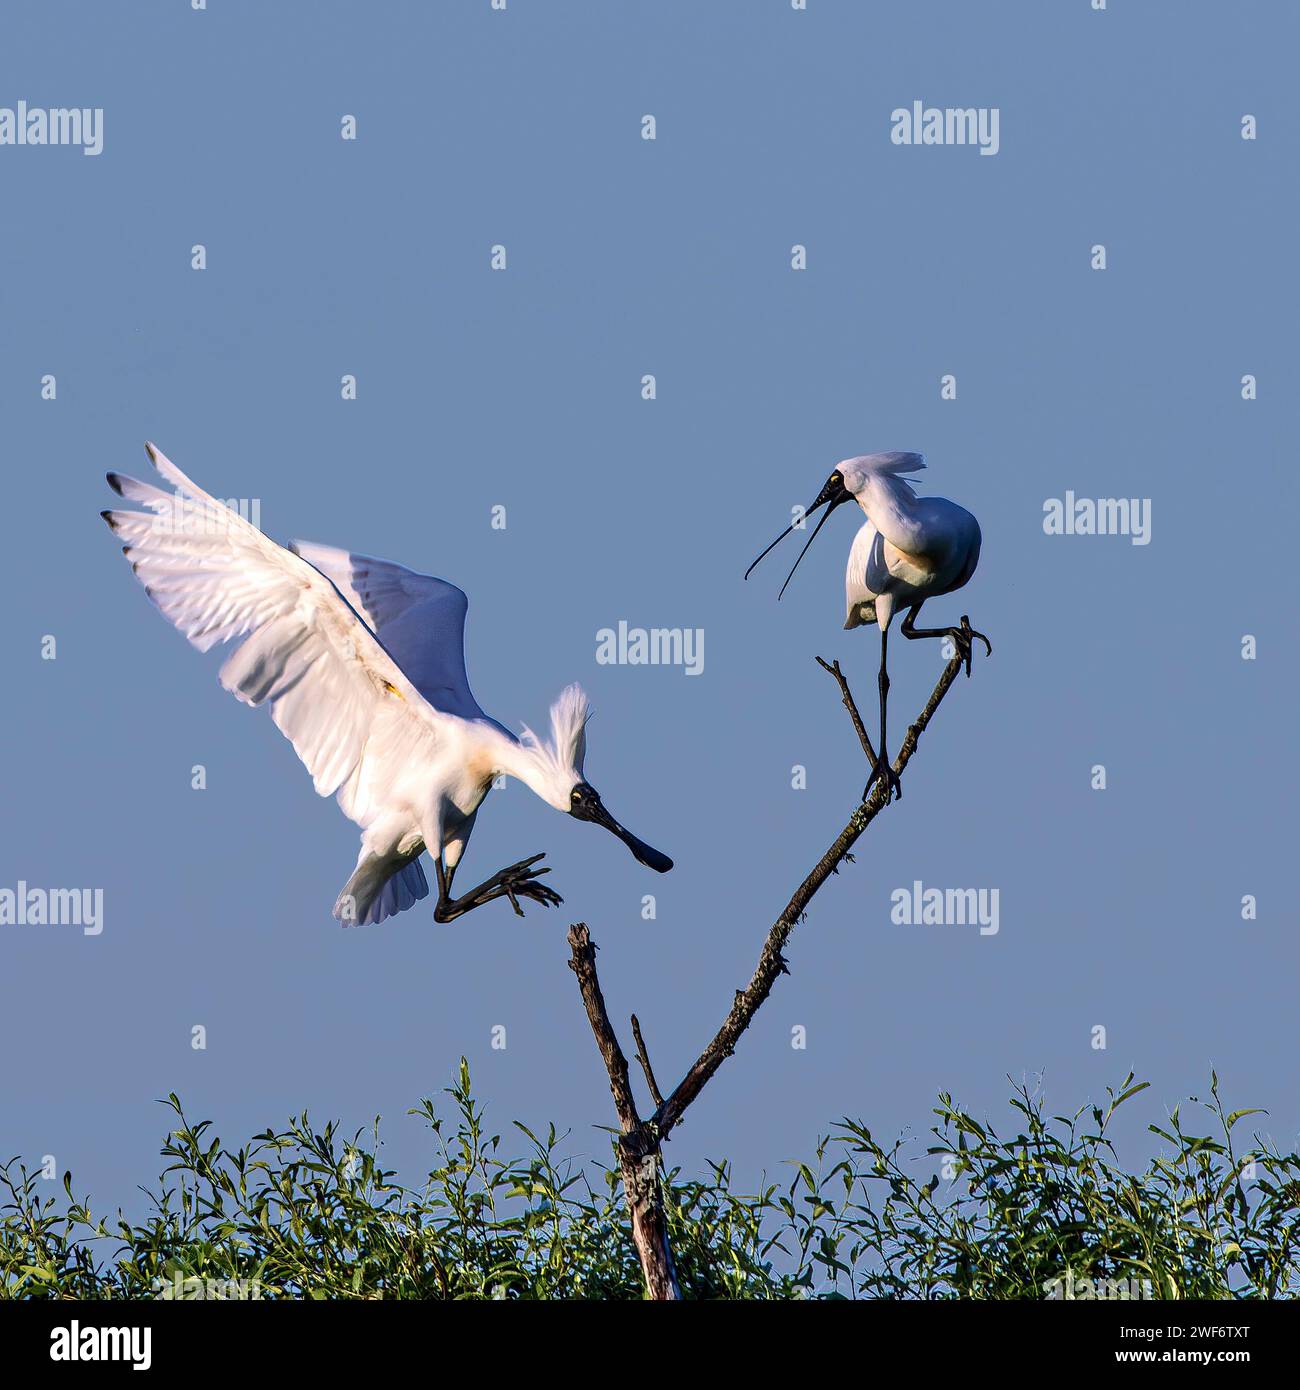 Zwei Vögel auf einem Ast, während ein anderer Vogel am Himmel schwingt Stockfoto